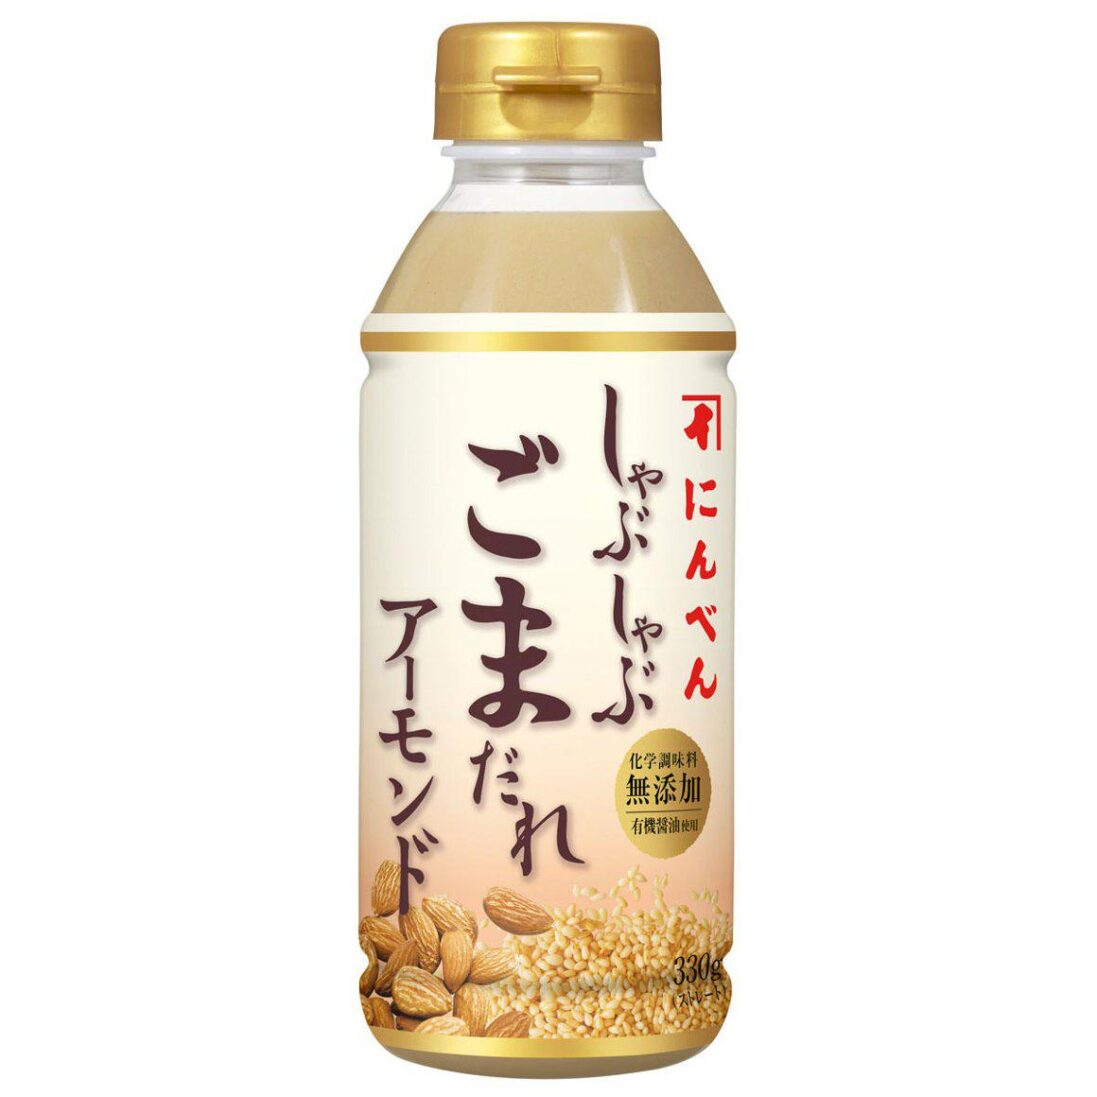 Ninben-Gomadare-Japanese-Sesame-Sauce-for-Shabu-shabu-330g-Japanese-Taste_2048x.jpg